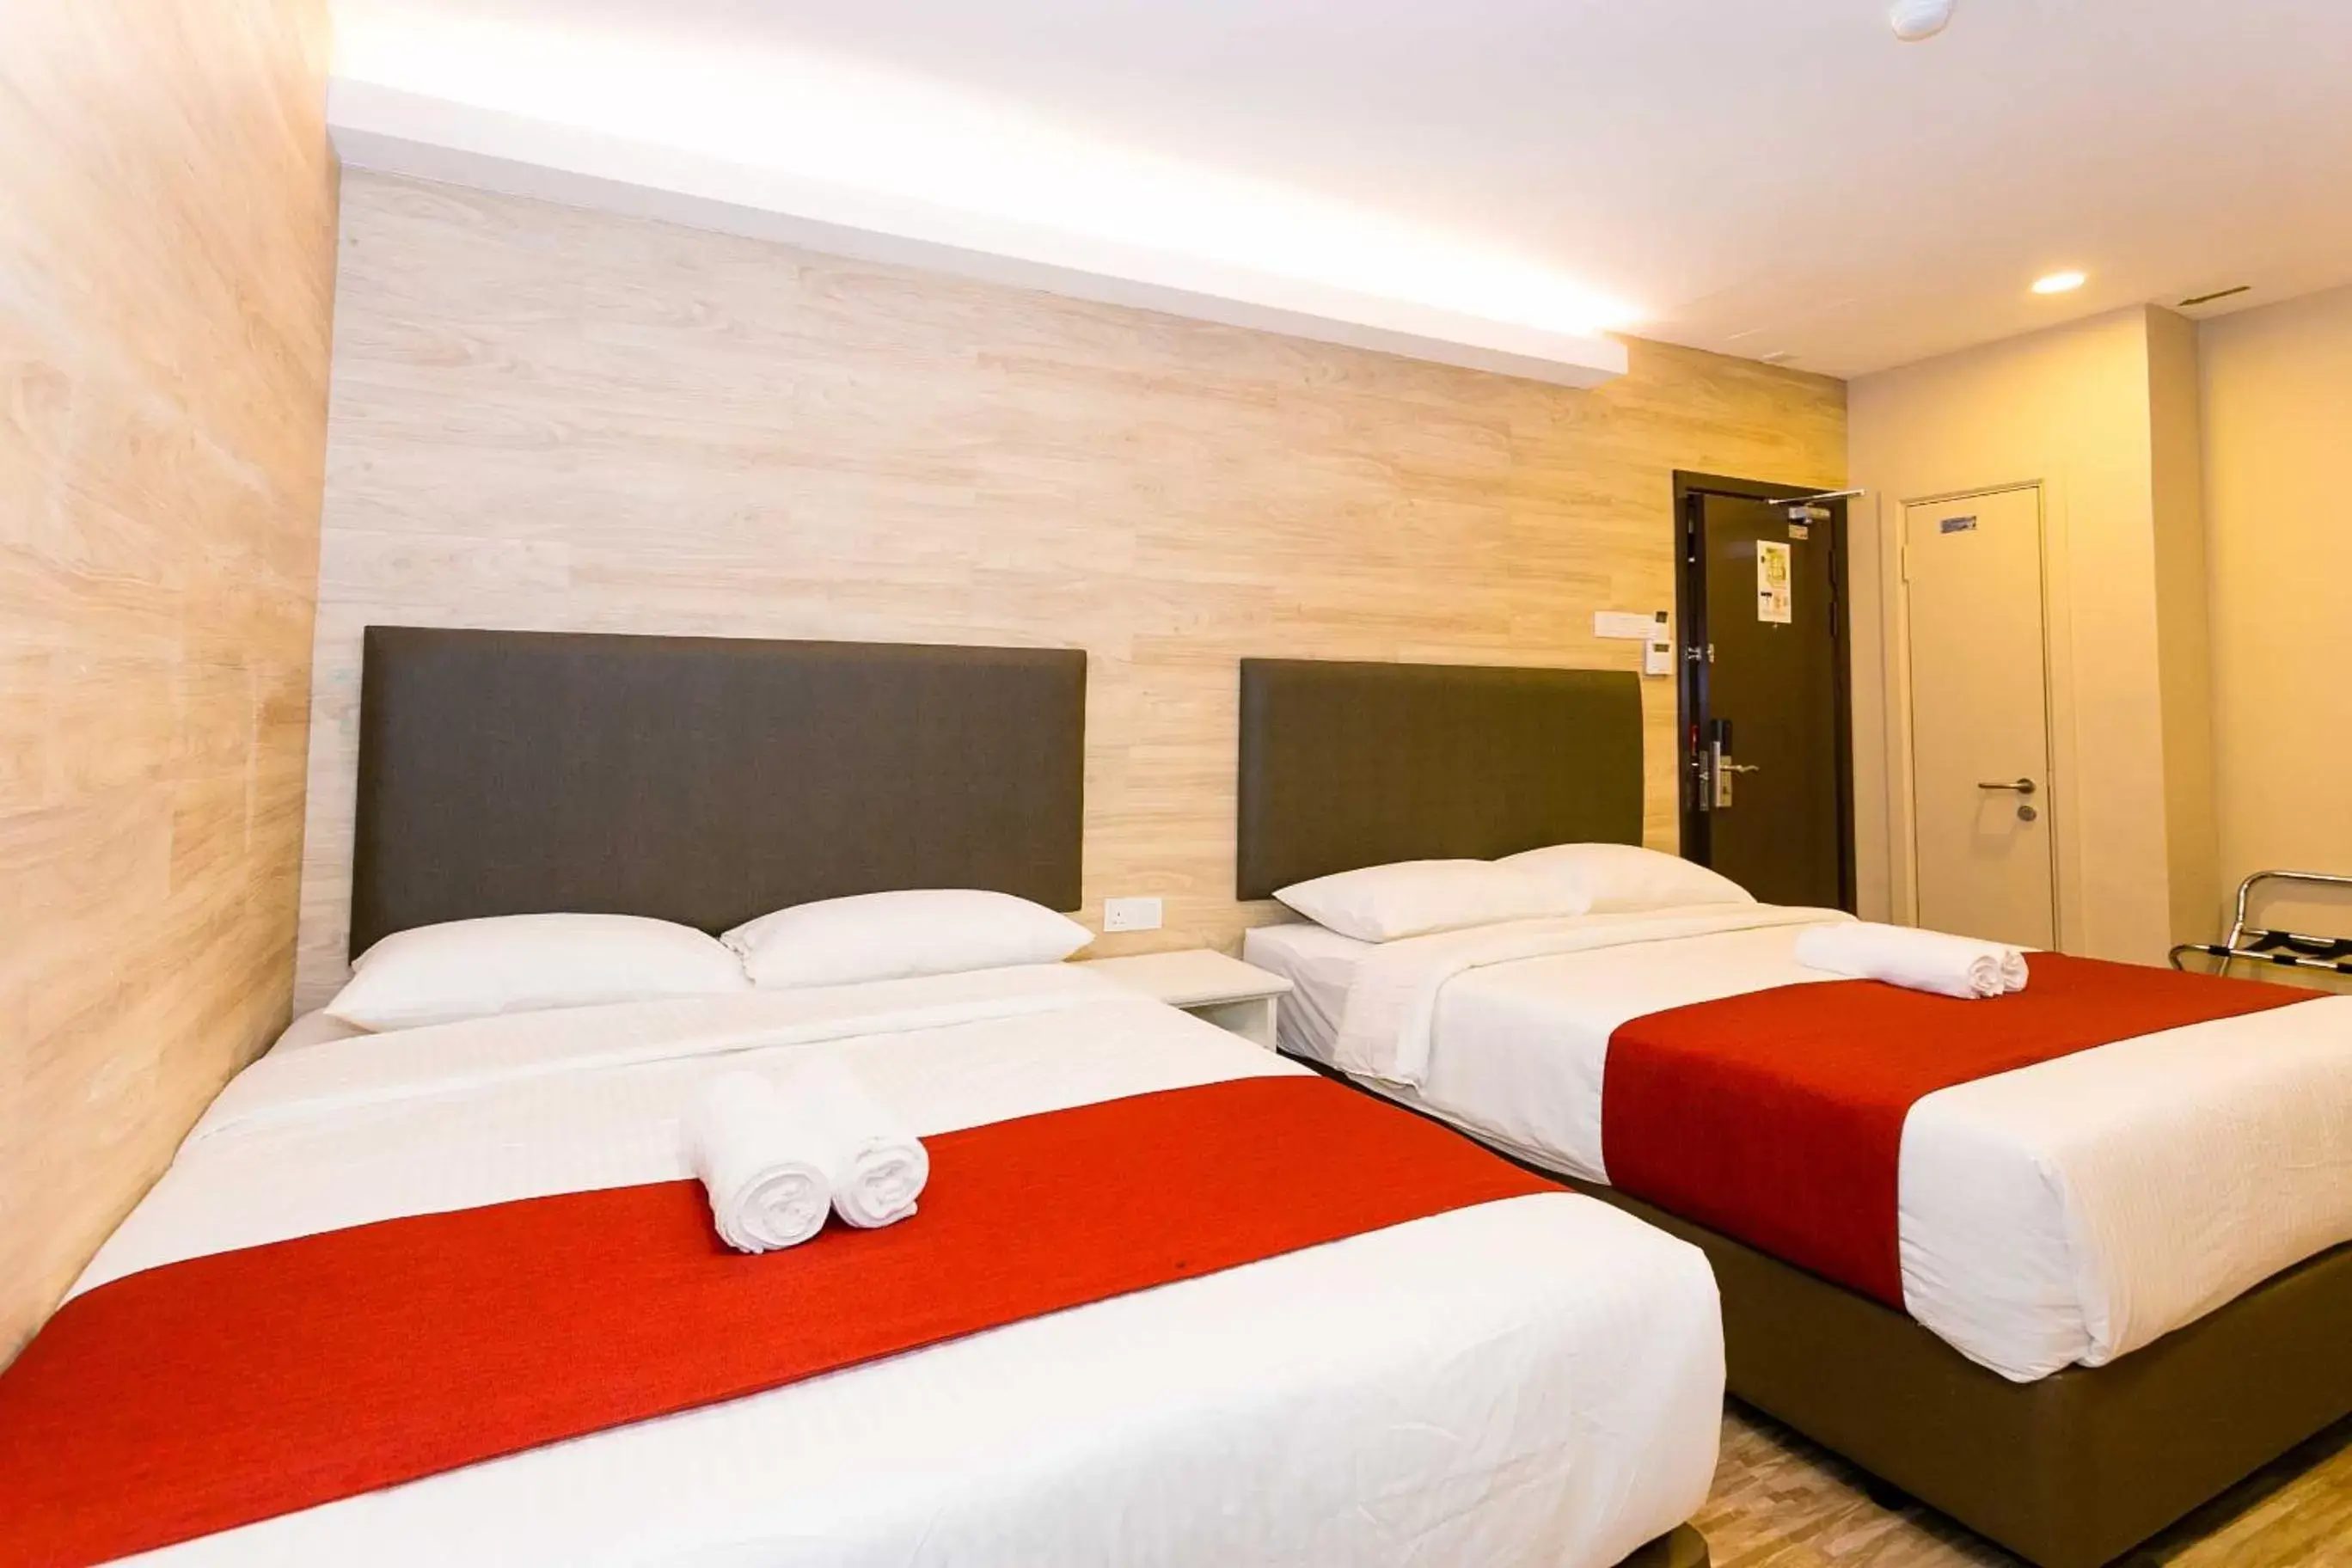 Bedroom, Room Photo in Icon Hotel Segamat